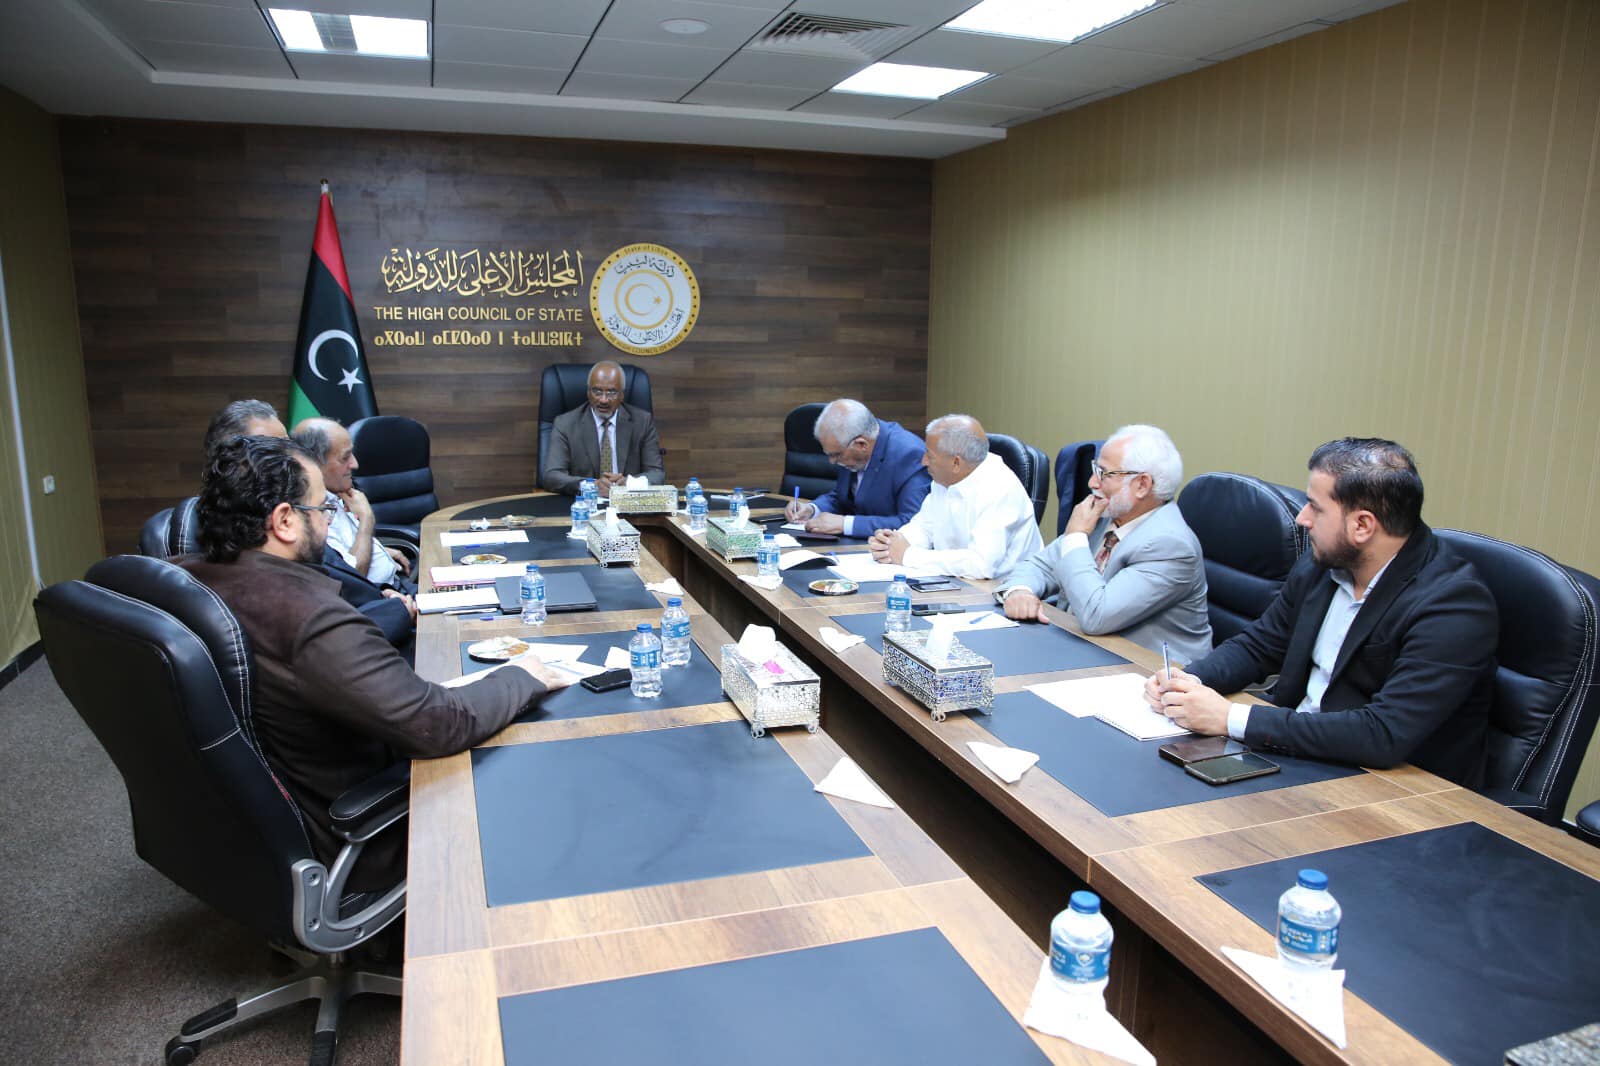  لجنة الشؤون السياسية بمجلس الدولة تعقد لقاء مع حراك العدالة الانتقالية .